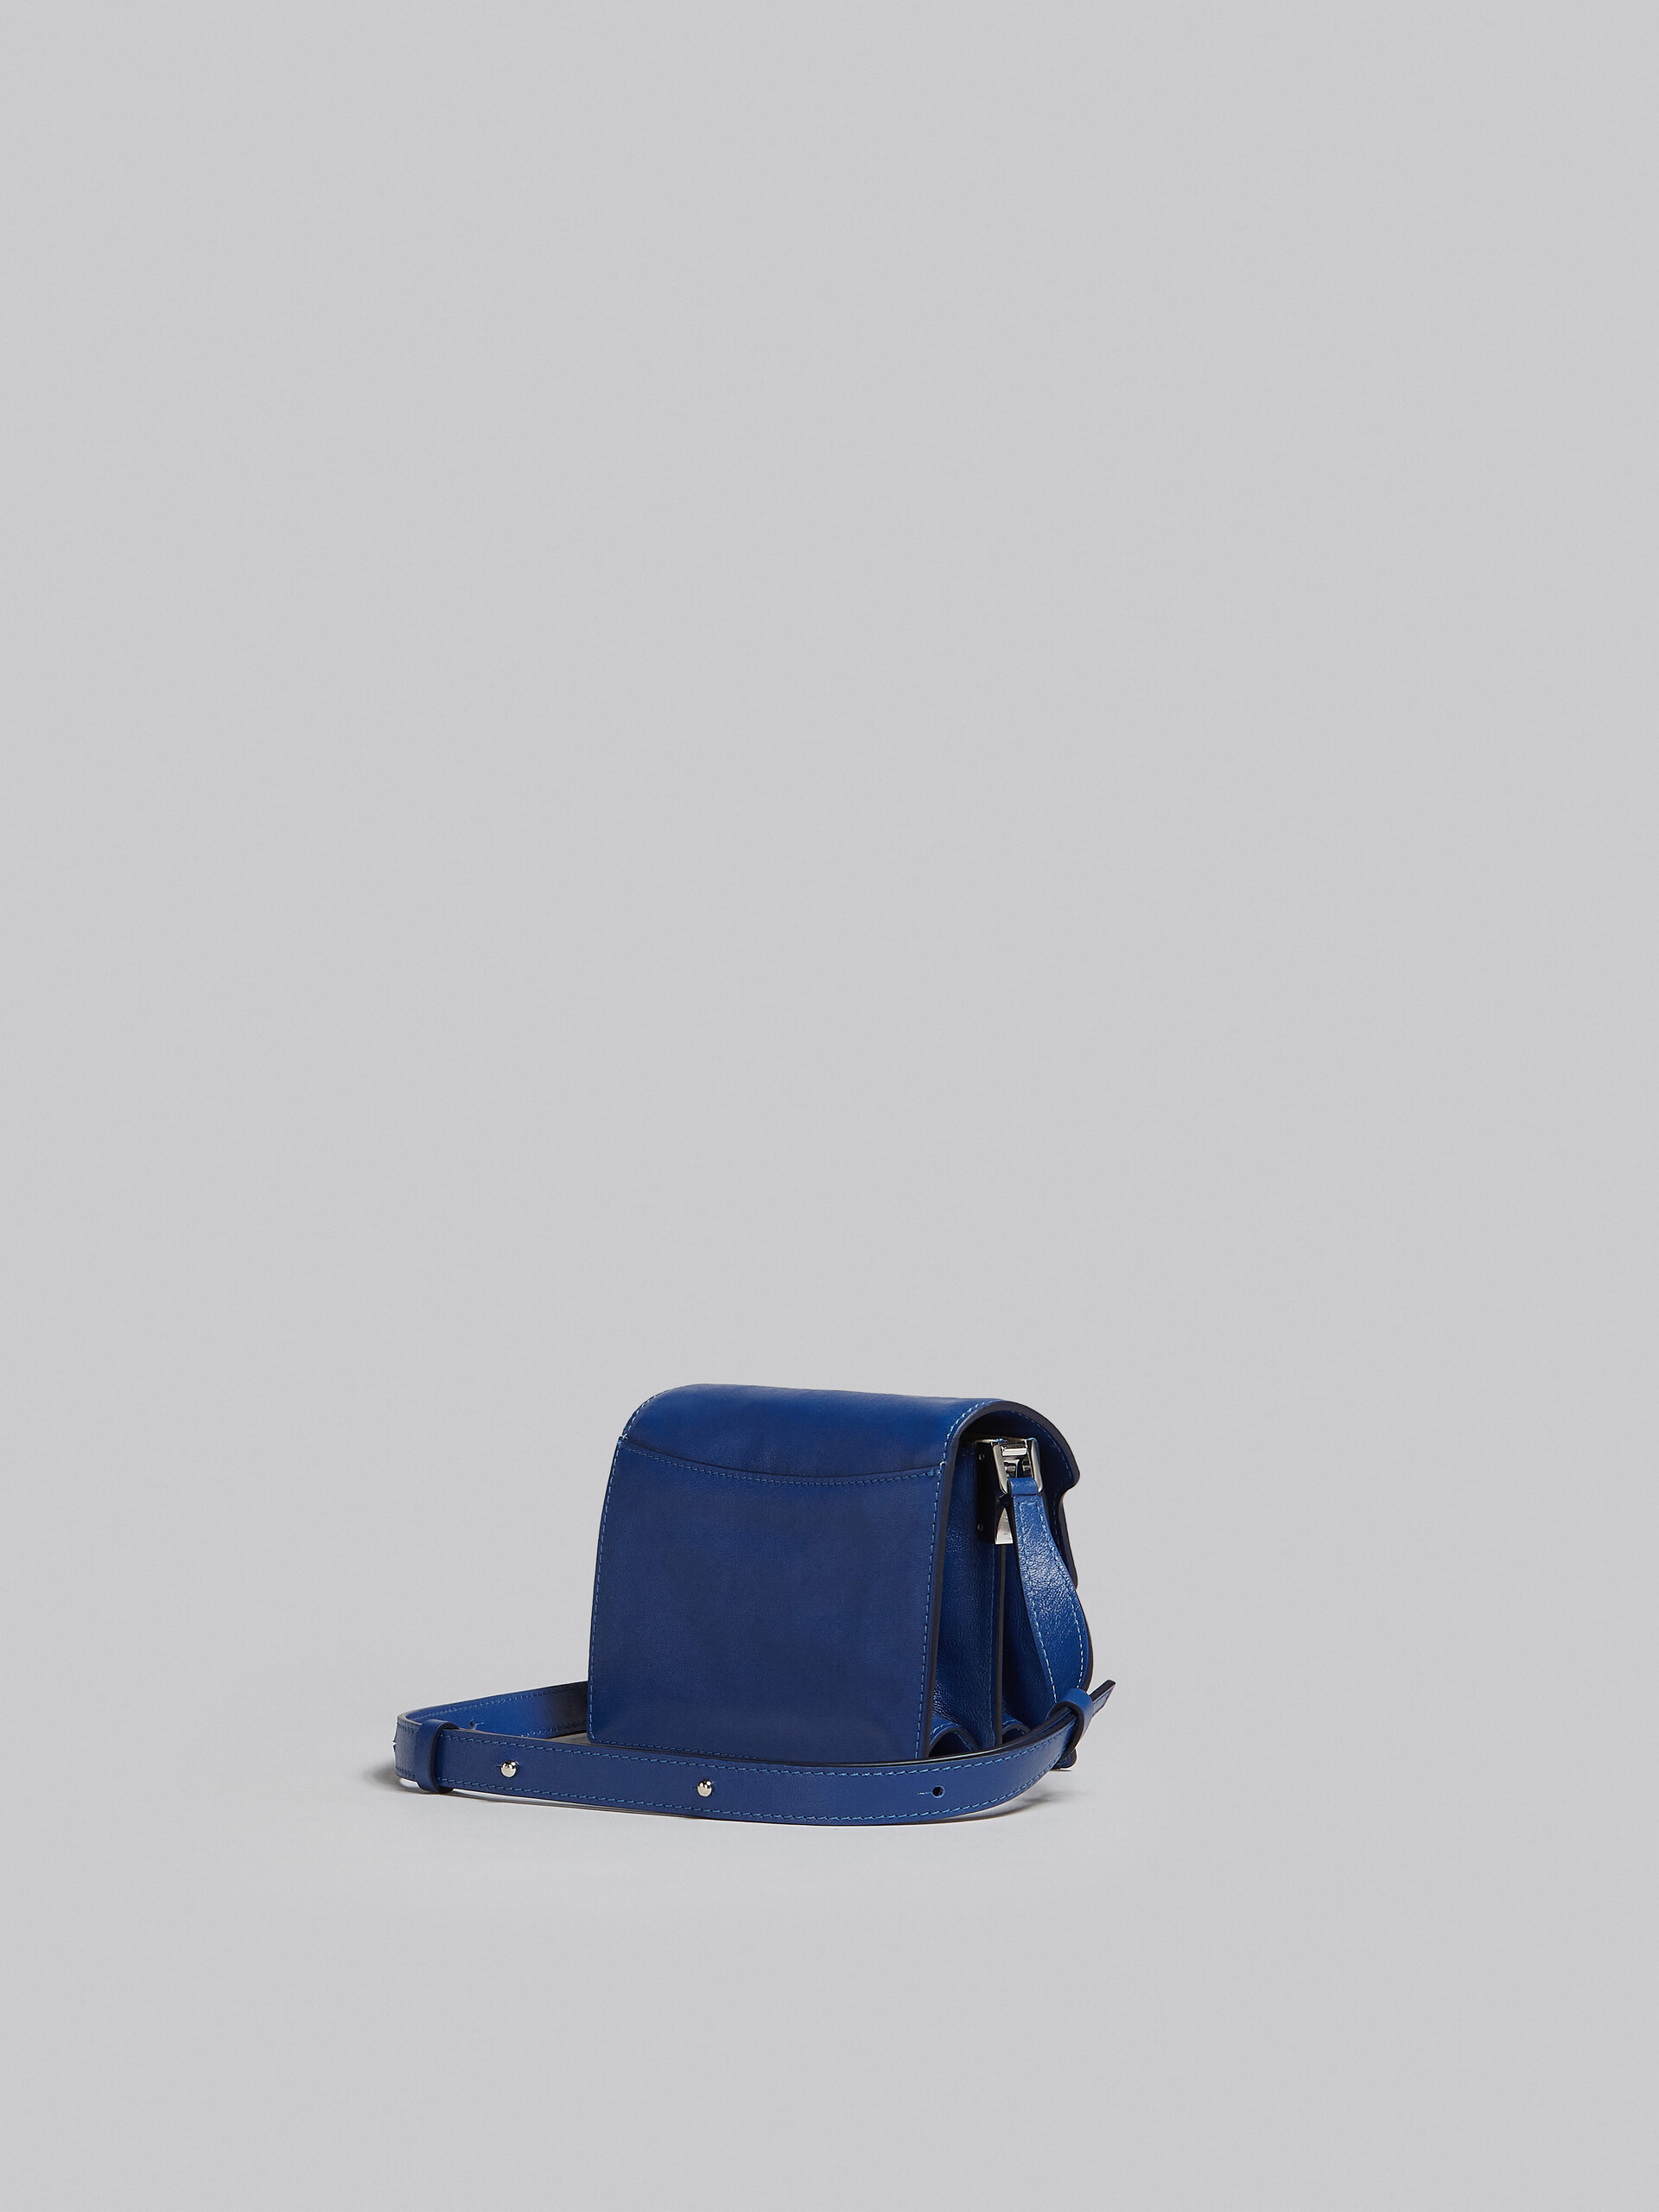 Trunk Soft Mini Bag in blue leather - Shoulder Bag - Image 3